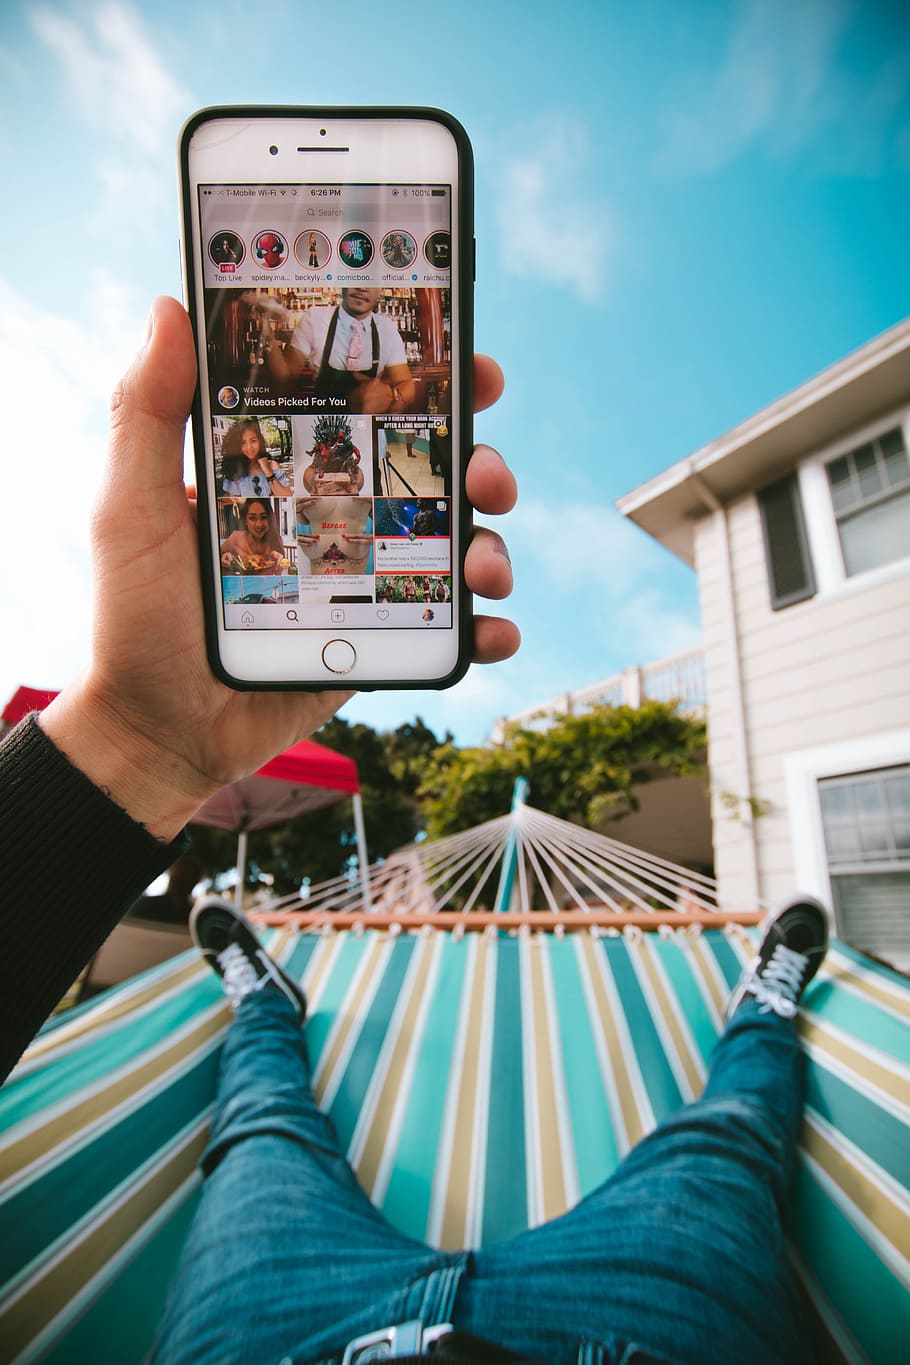 HD wallpaper: person on hammock using iPhone, hand, app, instagram, social media - Wallpaper Flare